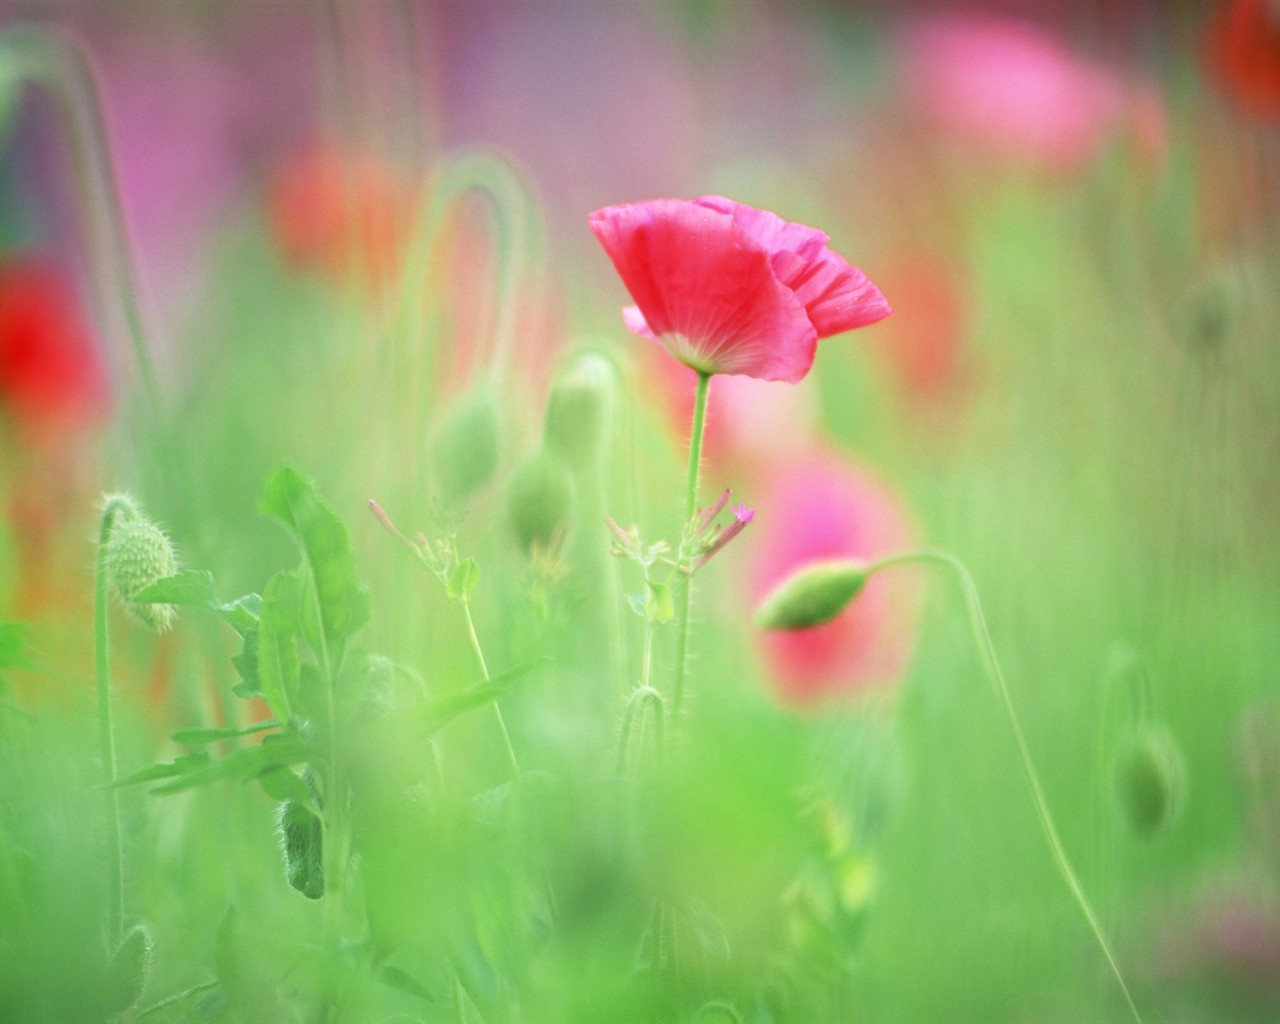 Fond d'écran Flower Soft Focus #10 - 1280x1024